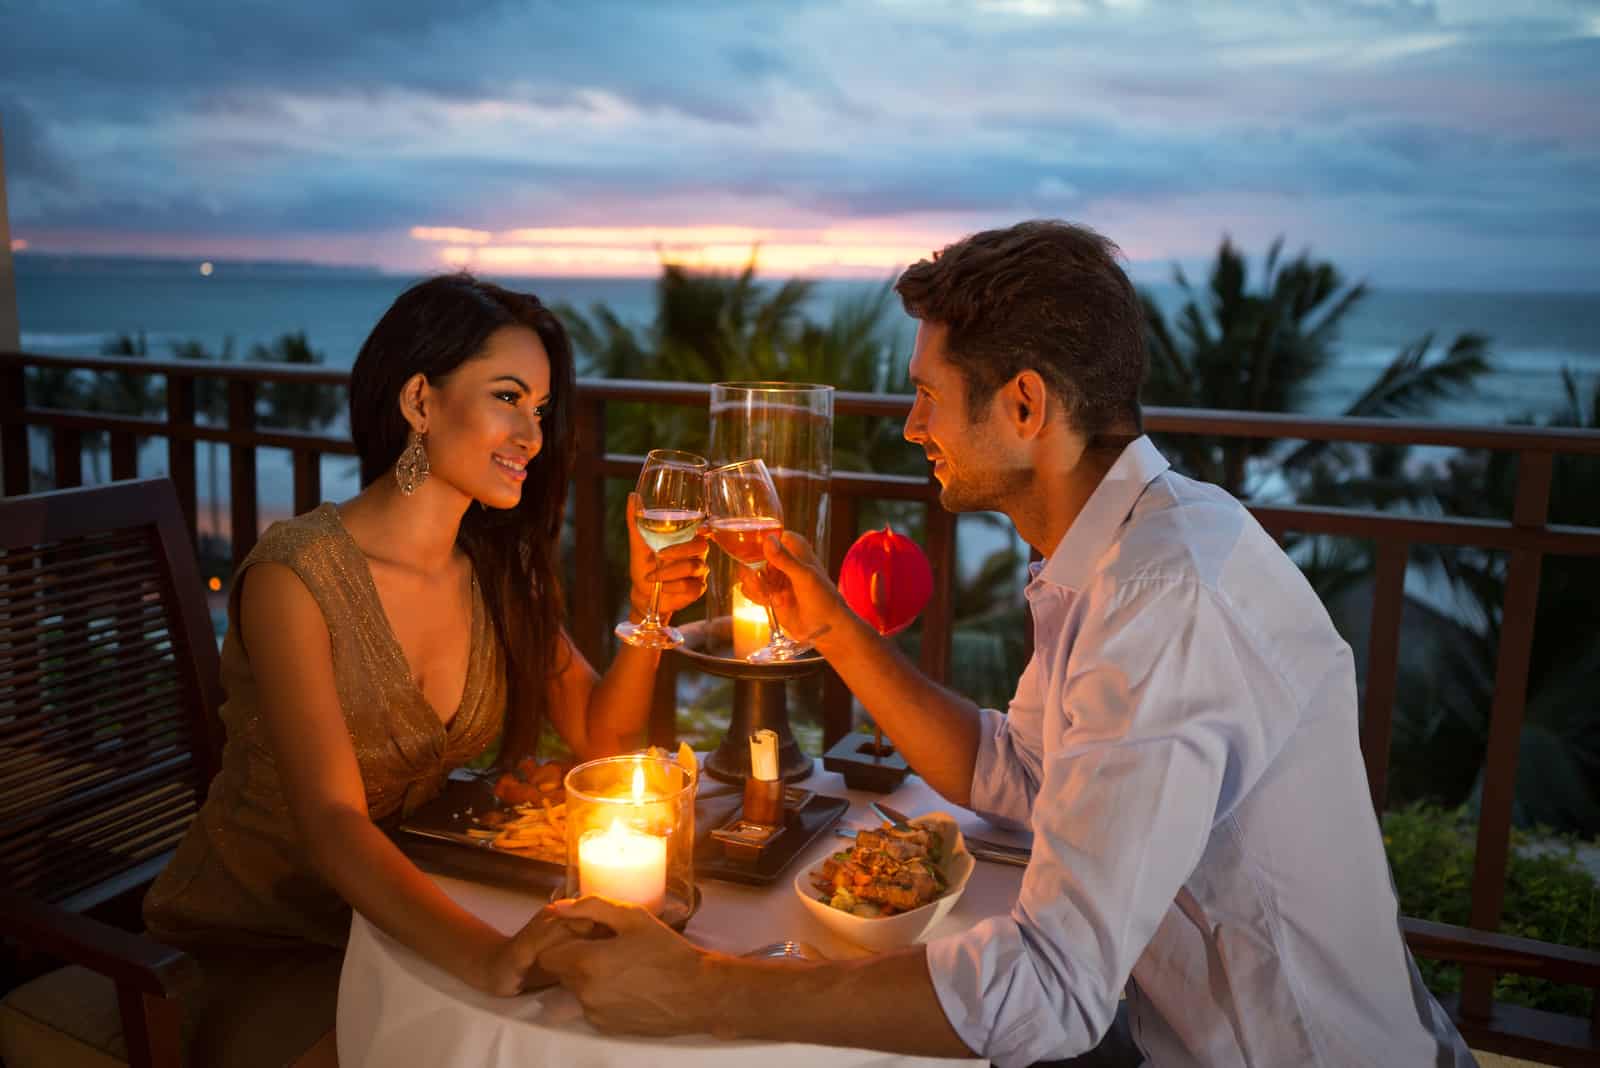 coppia attraente in un appuntamento romantico a cena